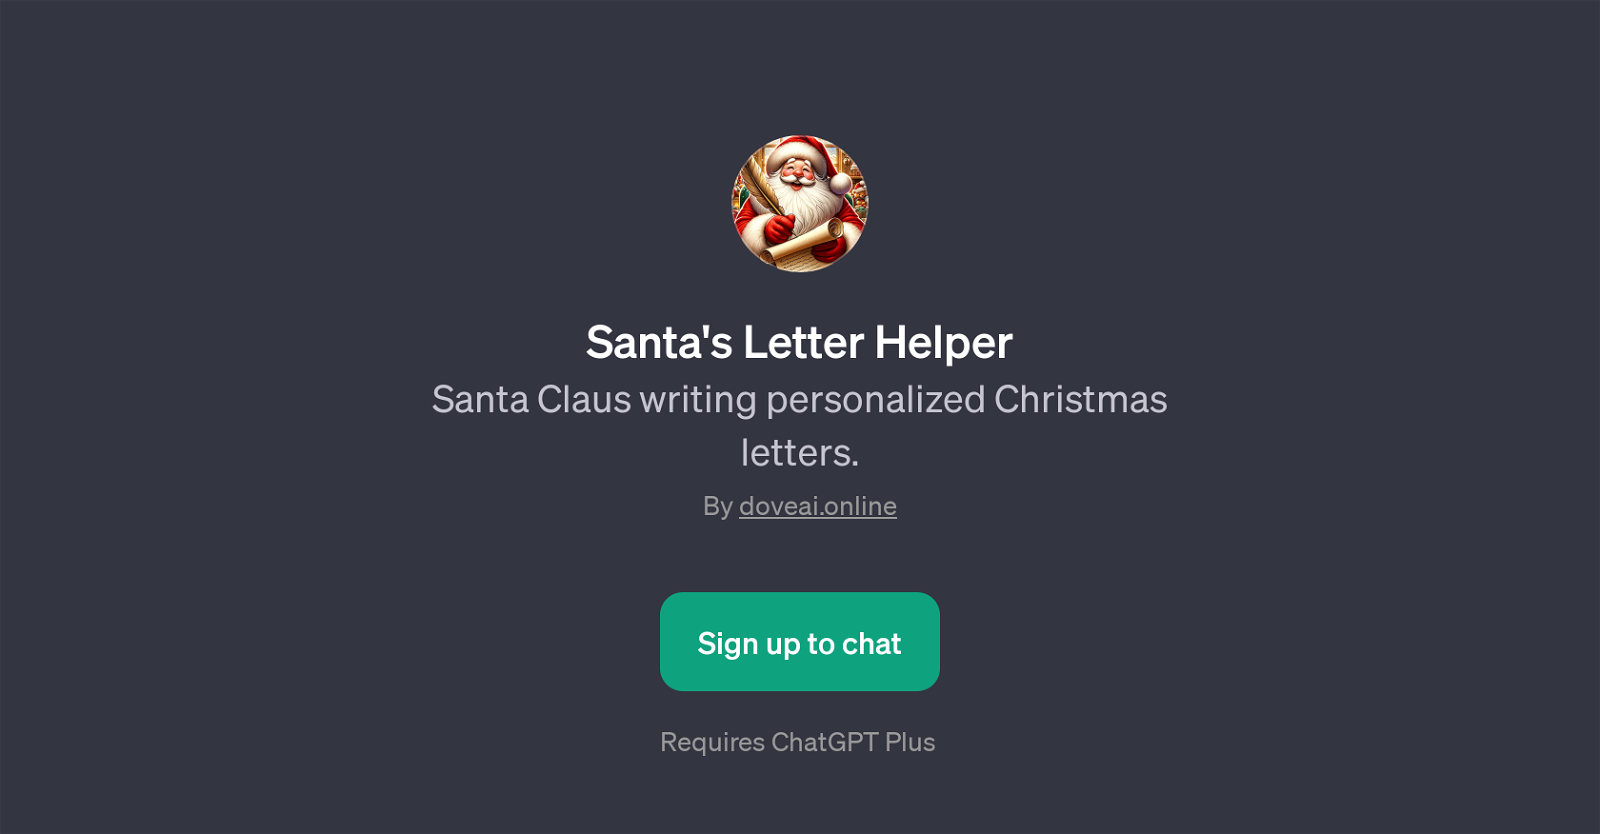 Santa's Letter Helper website